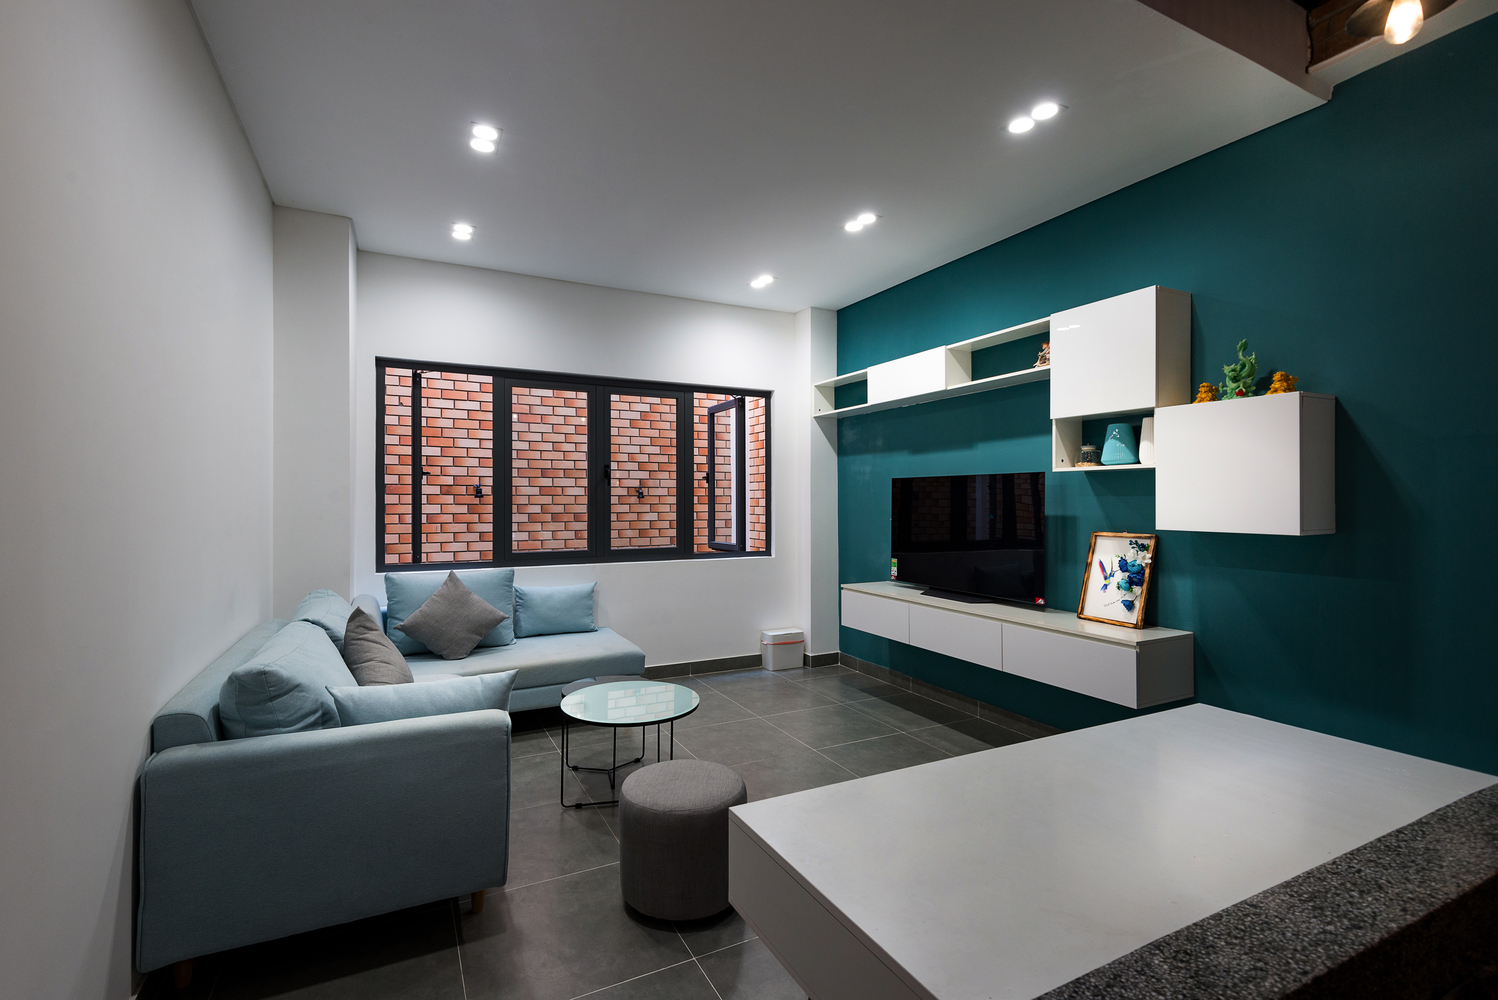 hình ảnh phòng khách nhà phố với sofa xám đặt đối diện với bức tường sơn màu xanh dương, cửa sổ kính mở ra tường gạch, khoảng thông tầng bên ngoài